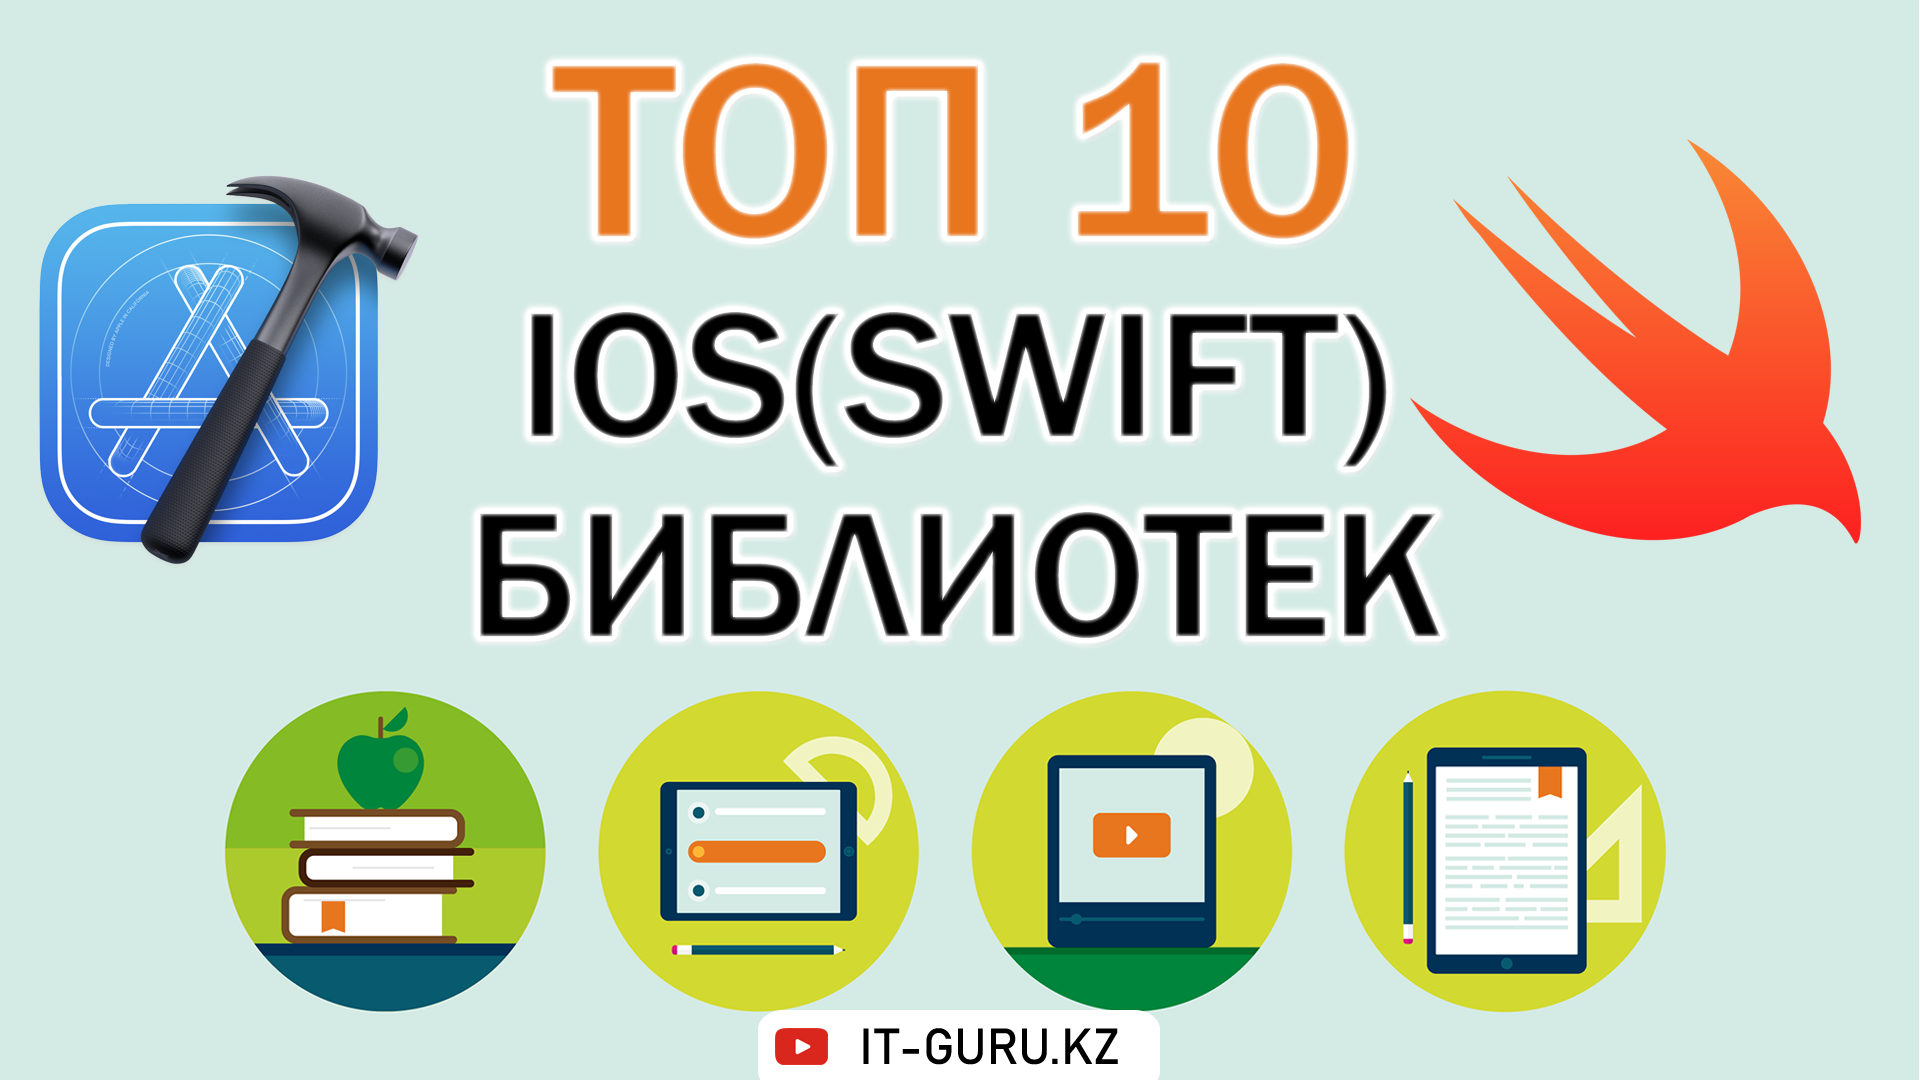 Топ 10 iOS (Swift) библиотек, о которых должен знать, каждый iOS разработчик